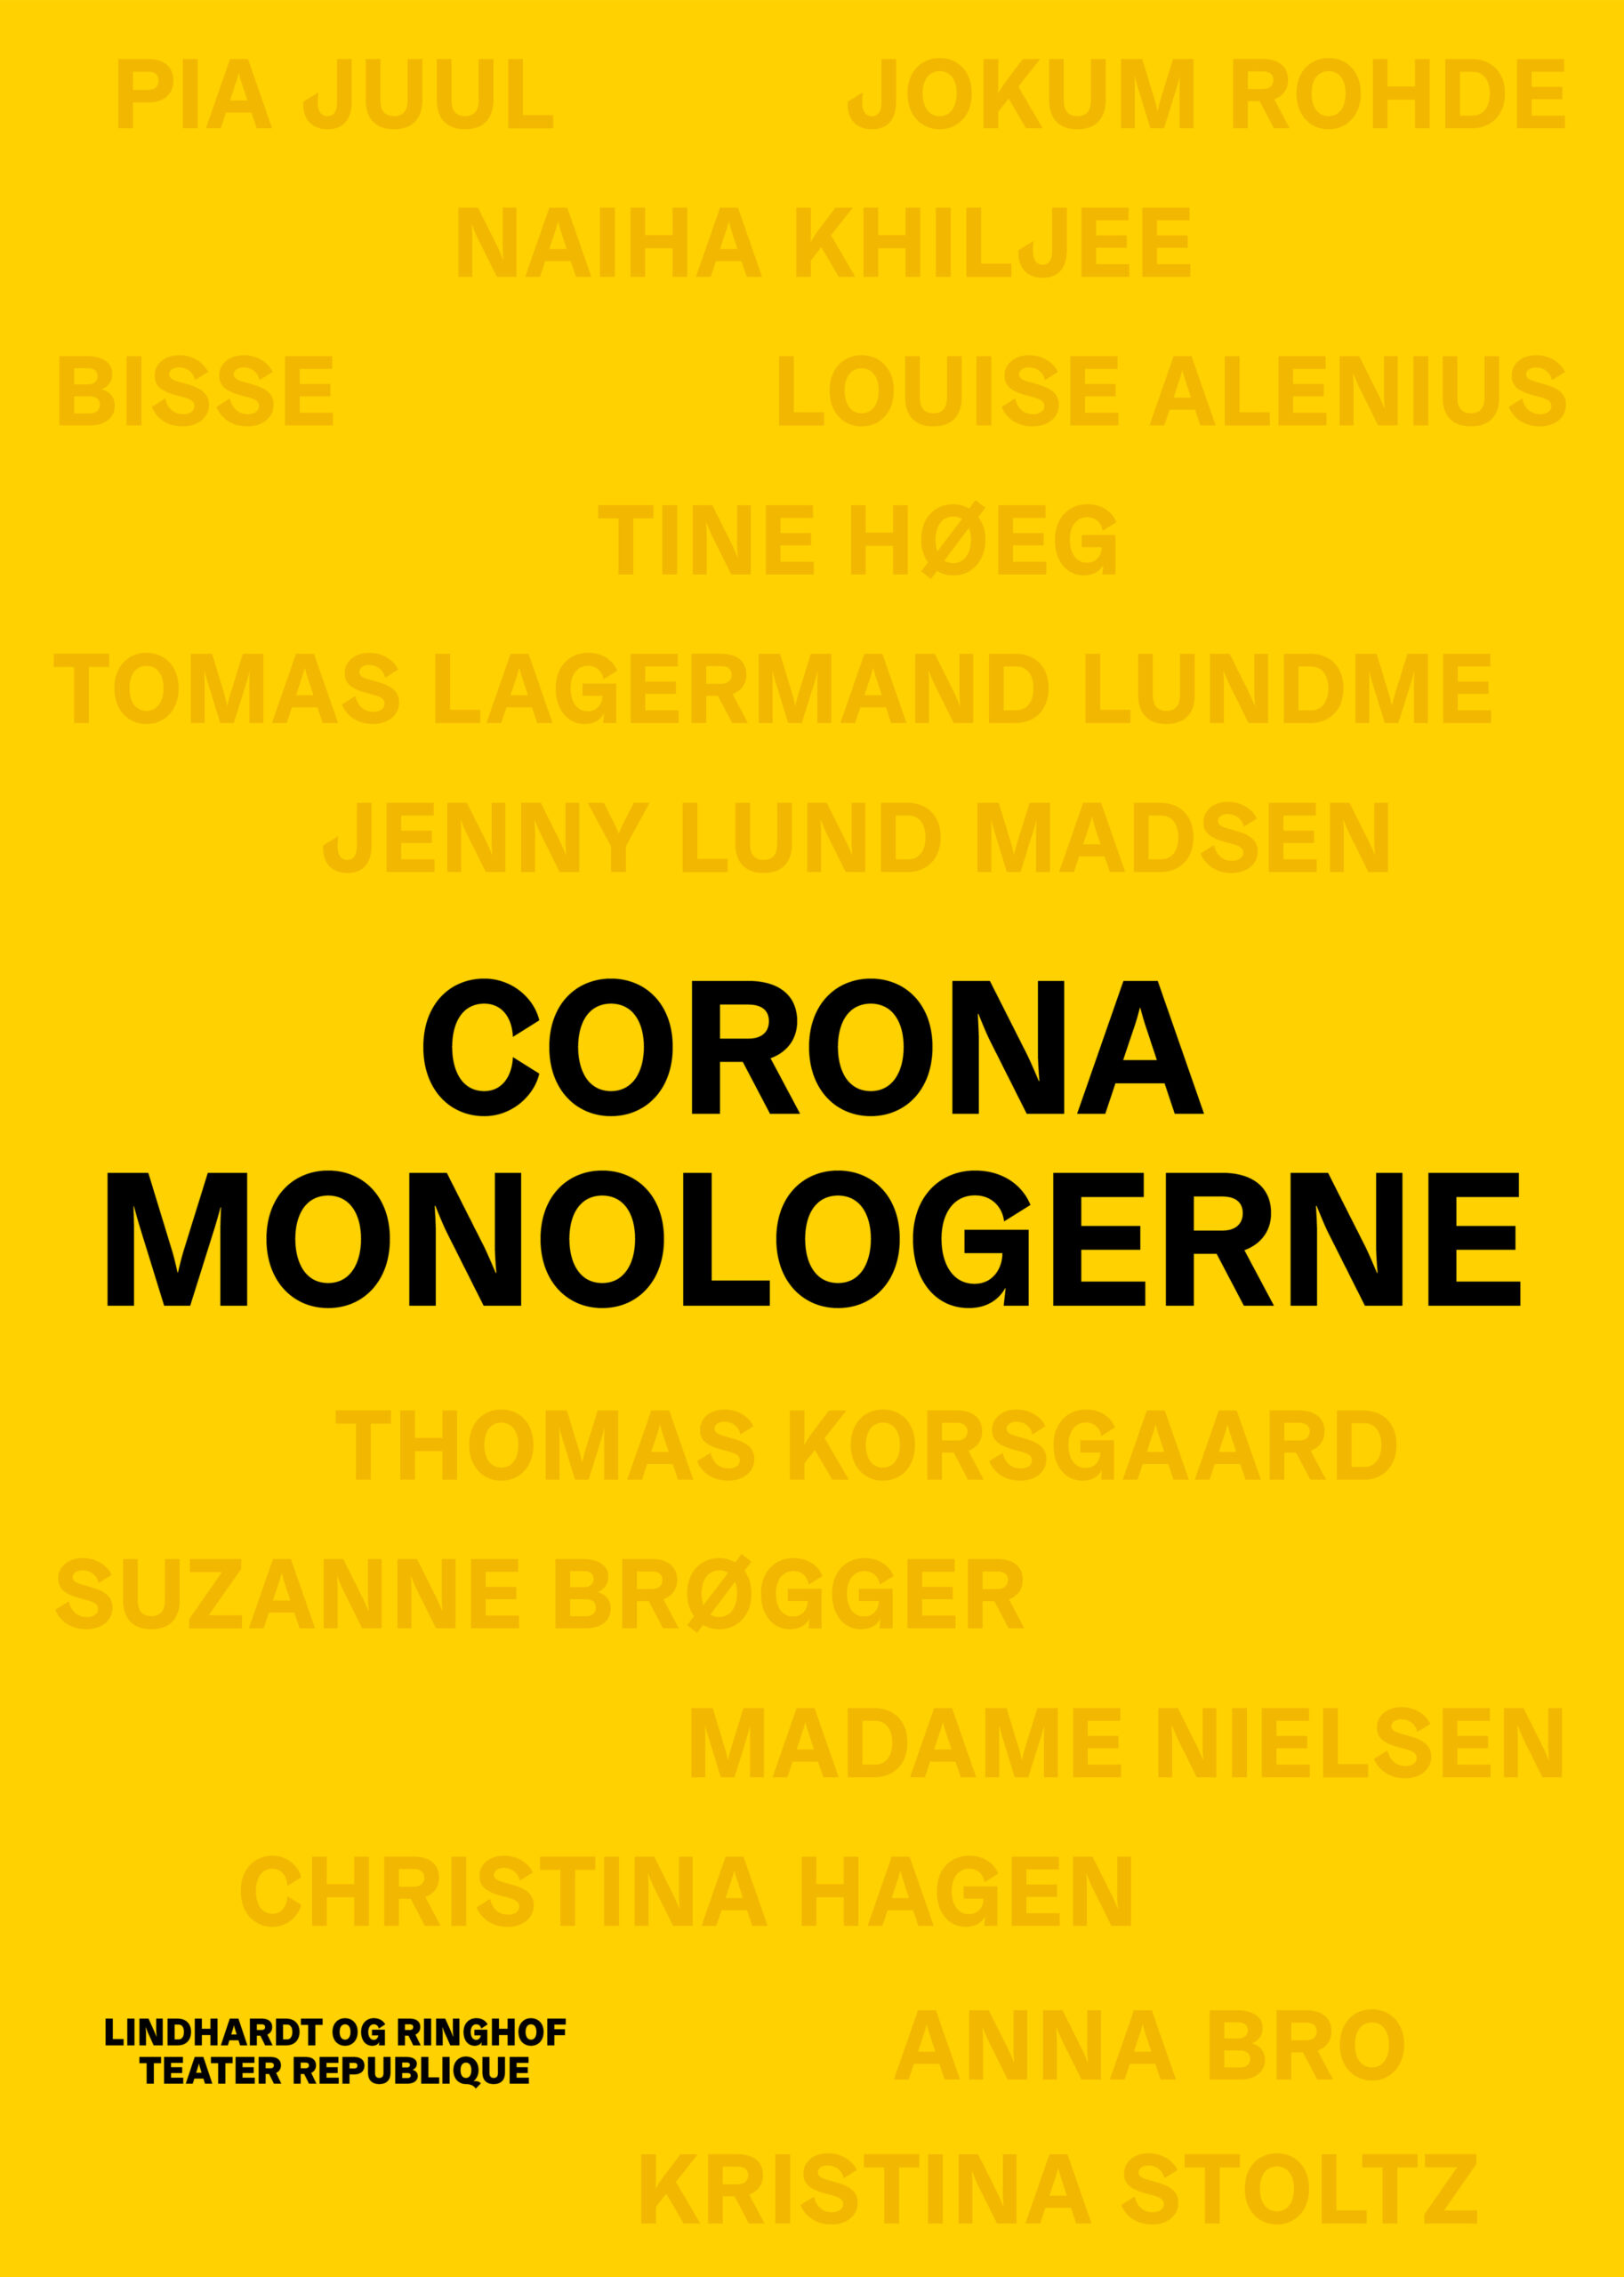 Anmeldelse (bog): Diverse: Coronamonologerne, Lindhardt og Ringhof